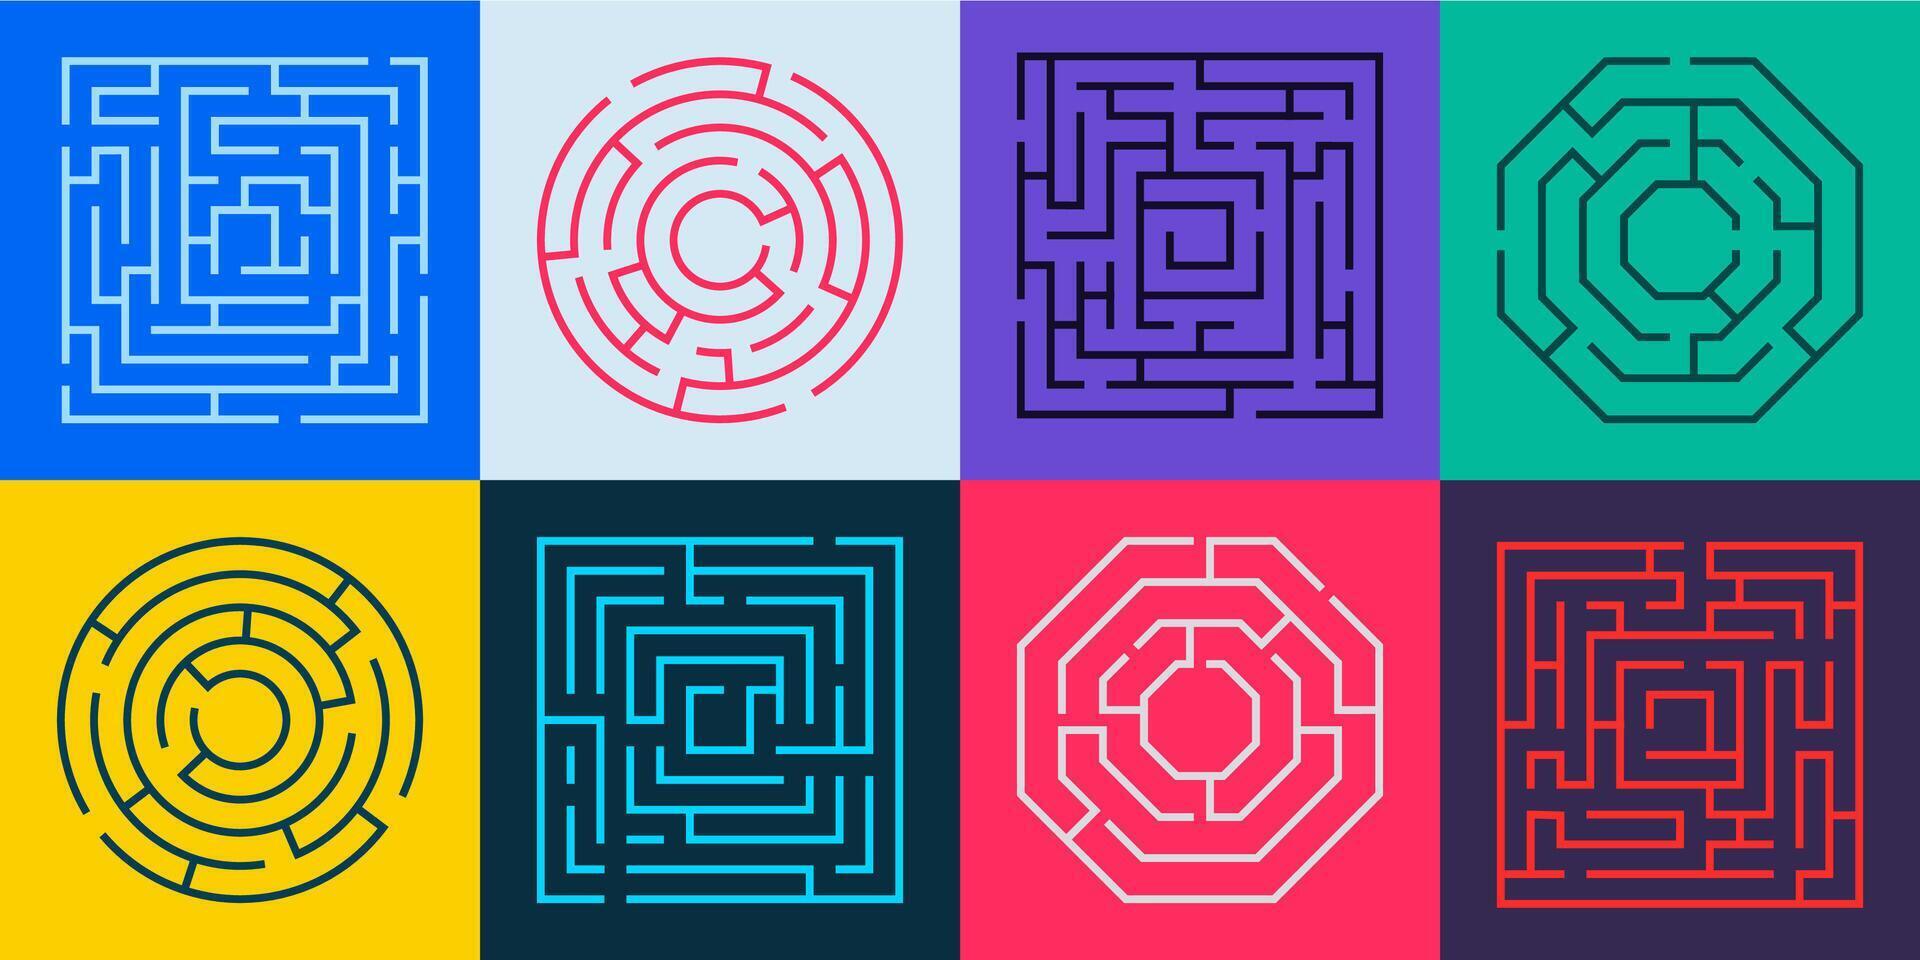 Labyrinthe chemin. rond labyrinthe énigme avec faux façon et droite chemin, labyrinthe puzzle avec porte et impasse, Labyrinthe Jeu concept. vecteur illustration